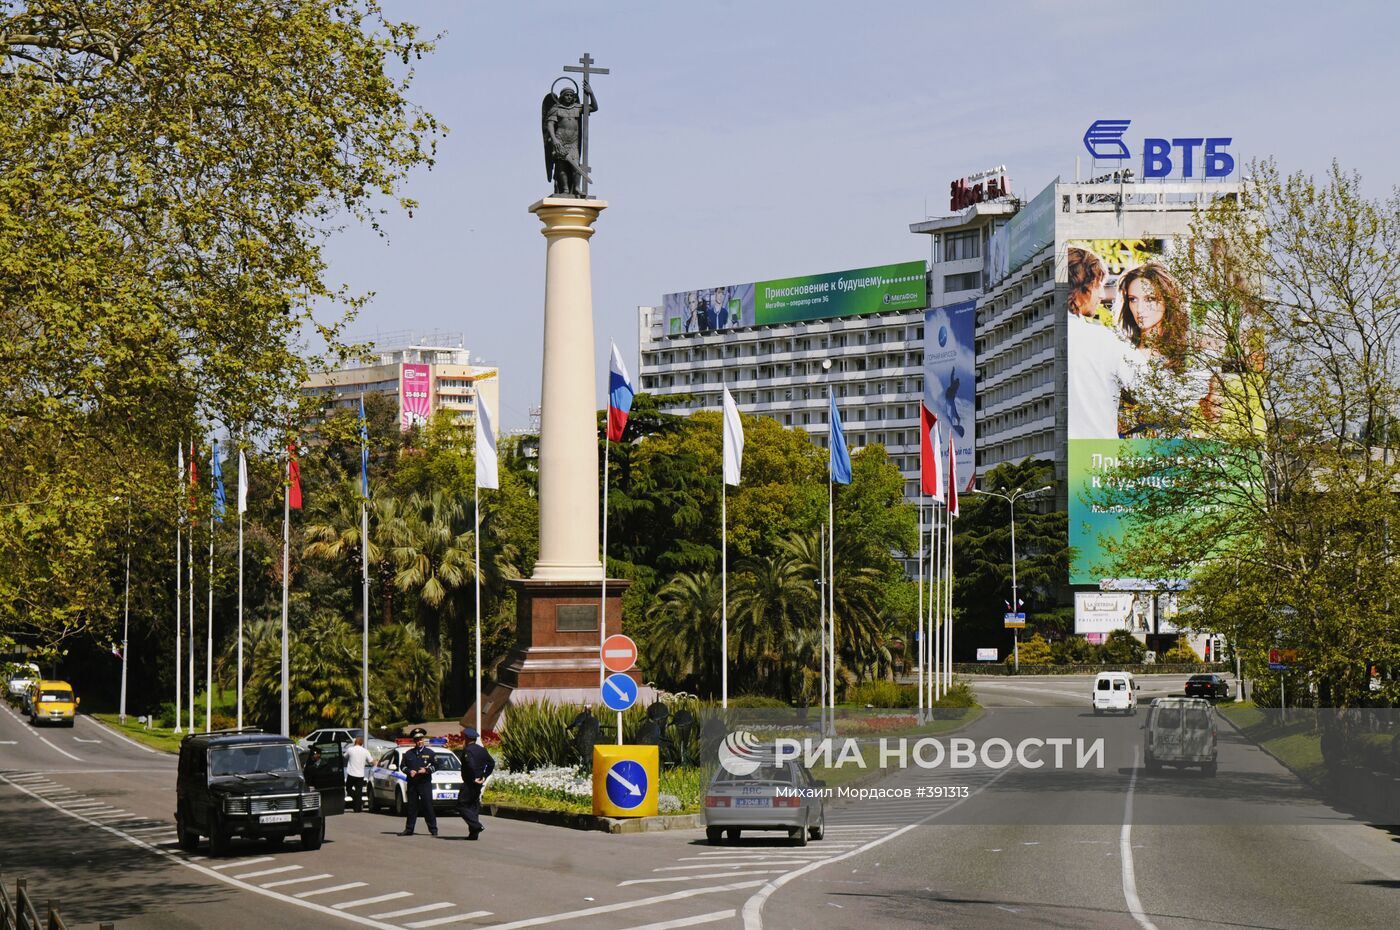 Монумент Михаила-Архангела в Сочи